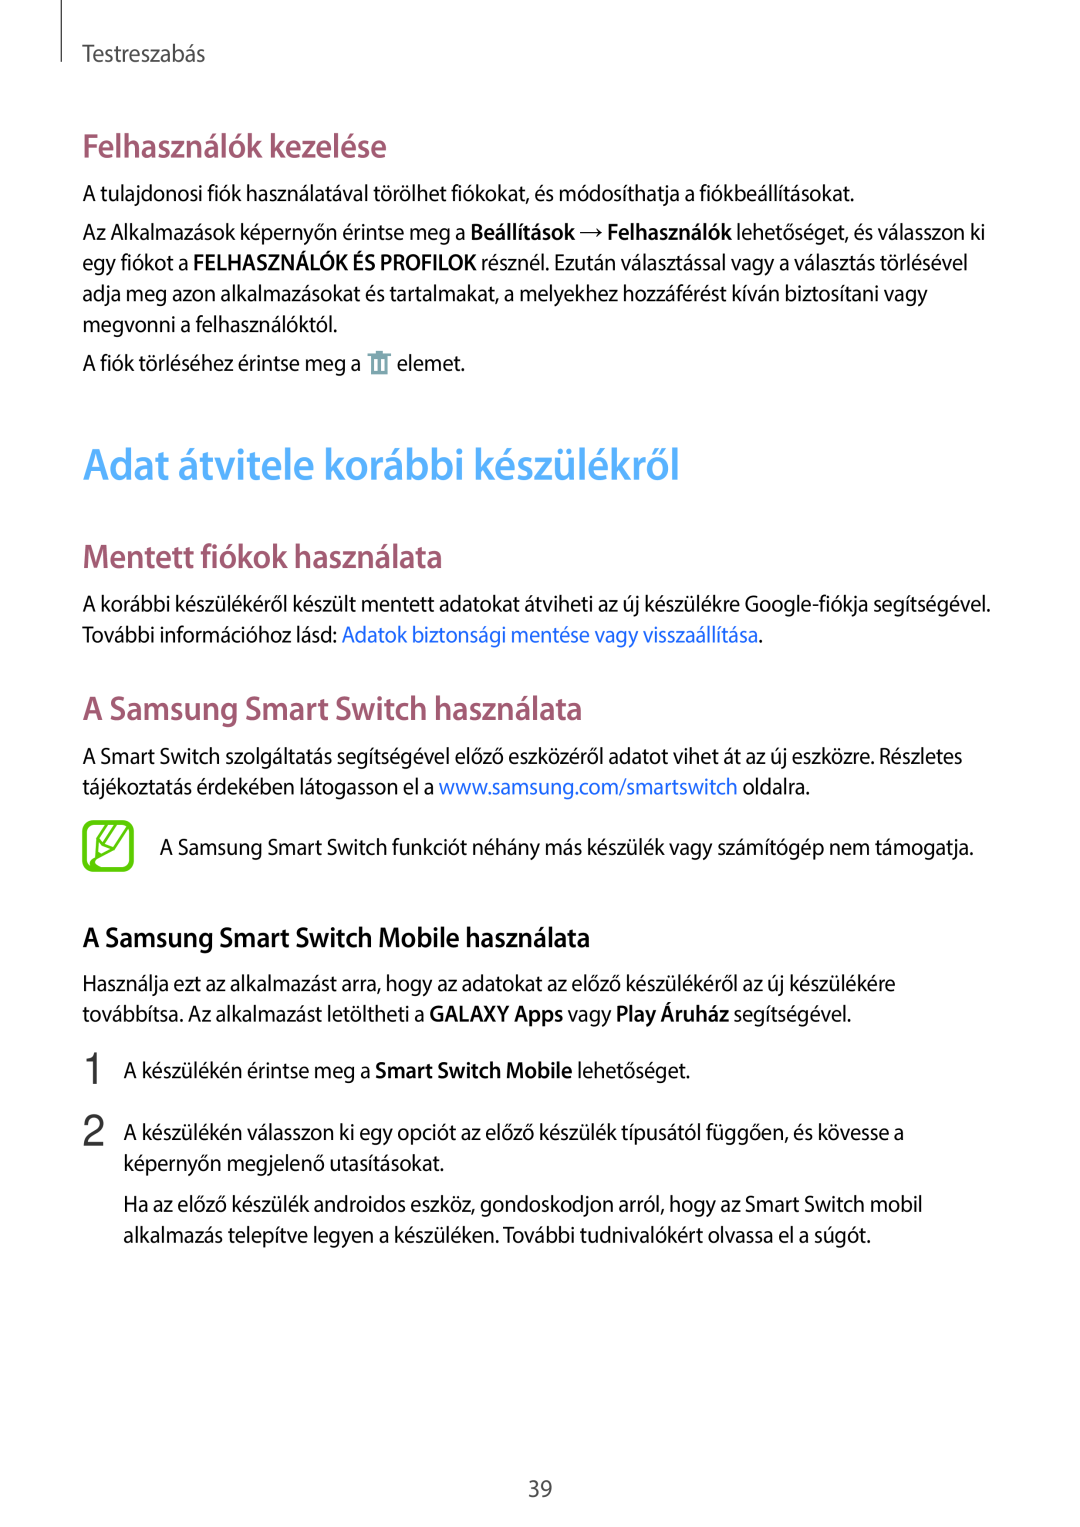 Samsung SM-T113NYKAATO Adat átvitele korábbi készülékről, Felhasználók kezelése, Mentett fiókok használata, Testreszabás 